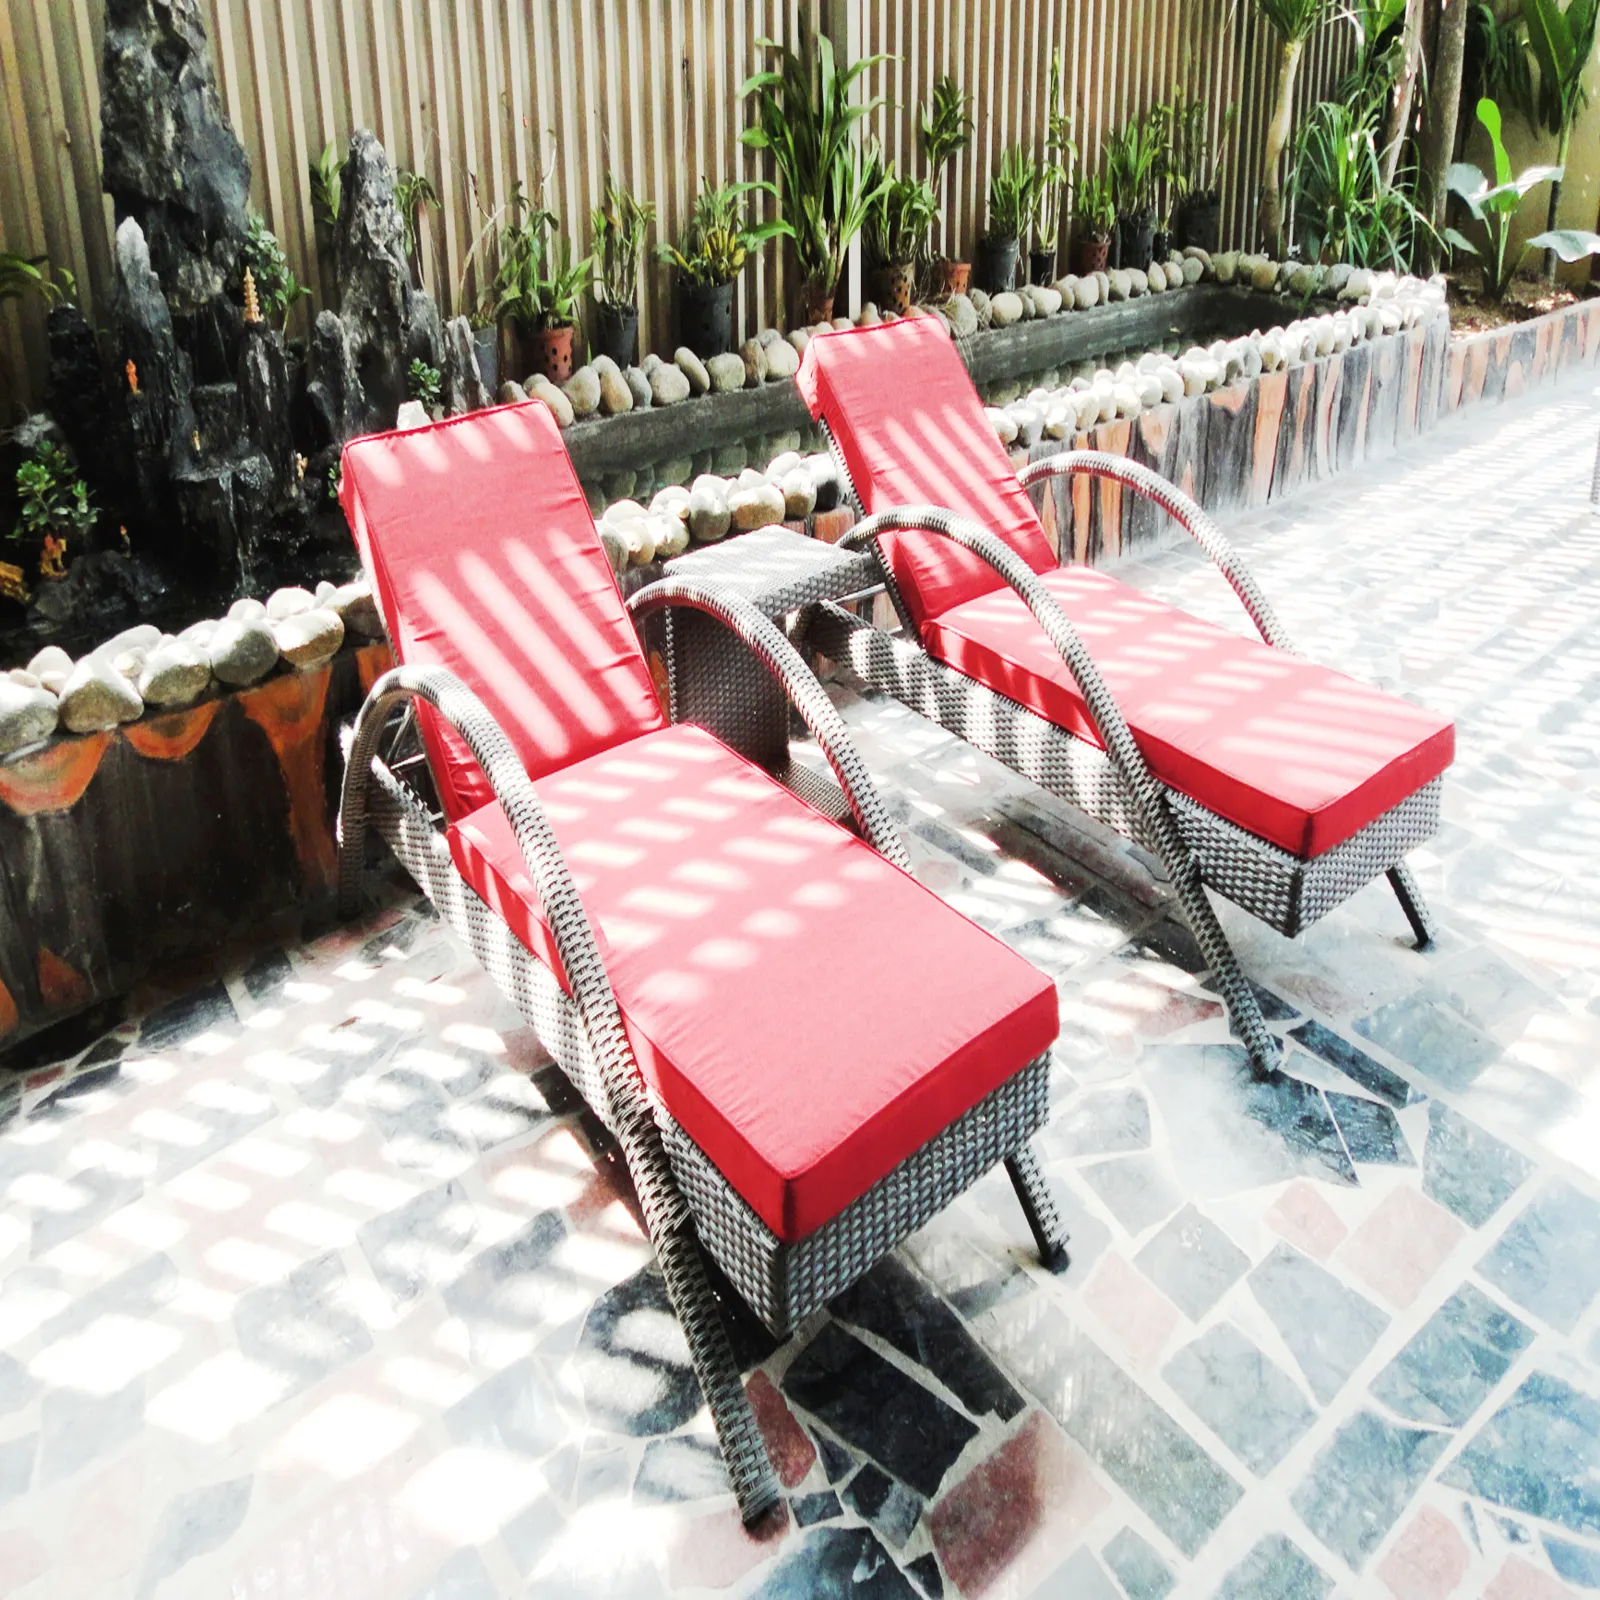 Ghế tắm nắng-người bạn đồng hành hoàn hảo cho kỳ nghỉ của bạn! Mang đến cho bạn một cảm giác nghỉ dưỡng đặc biệt trong sự thoải mái của khu vườn của riêng bạn